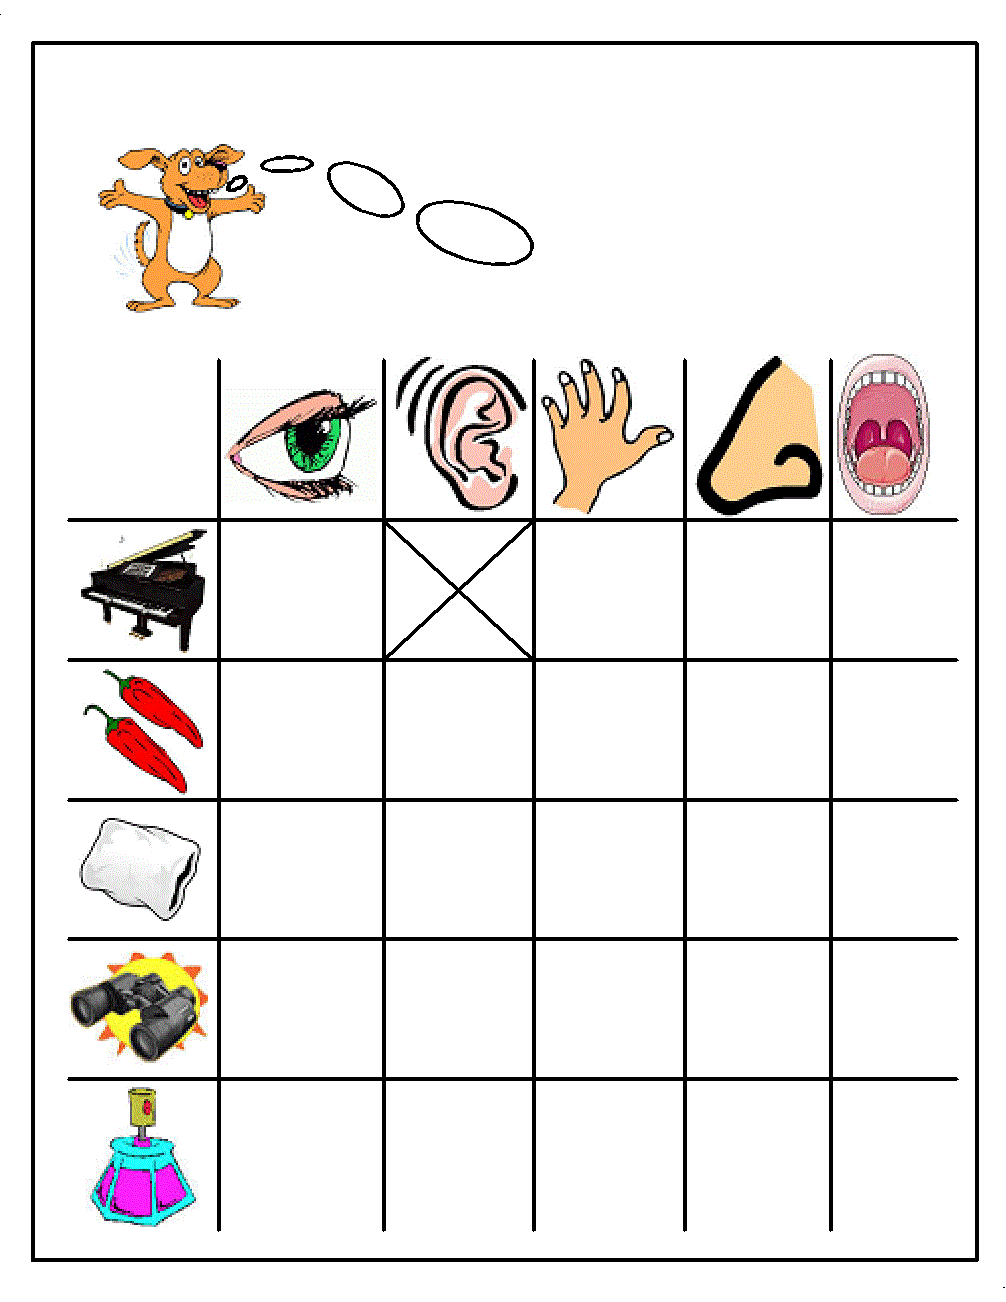 Preschool Five Sense Worksheets 1 Funnyc Koogra Free Printable